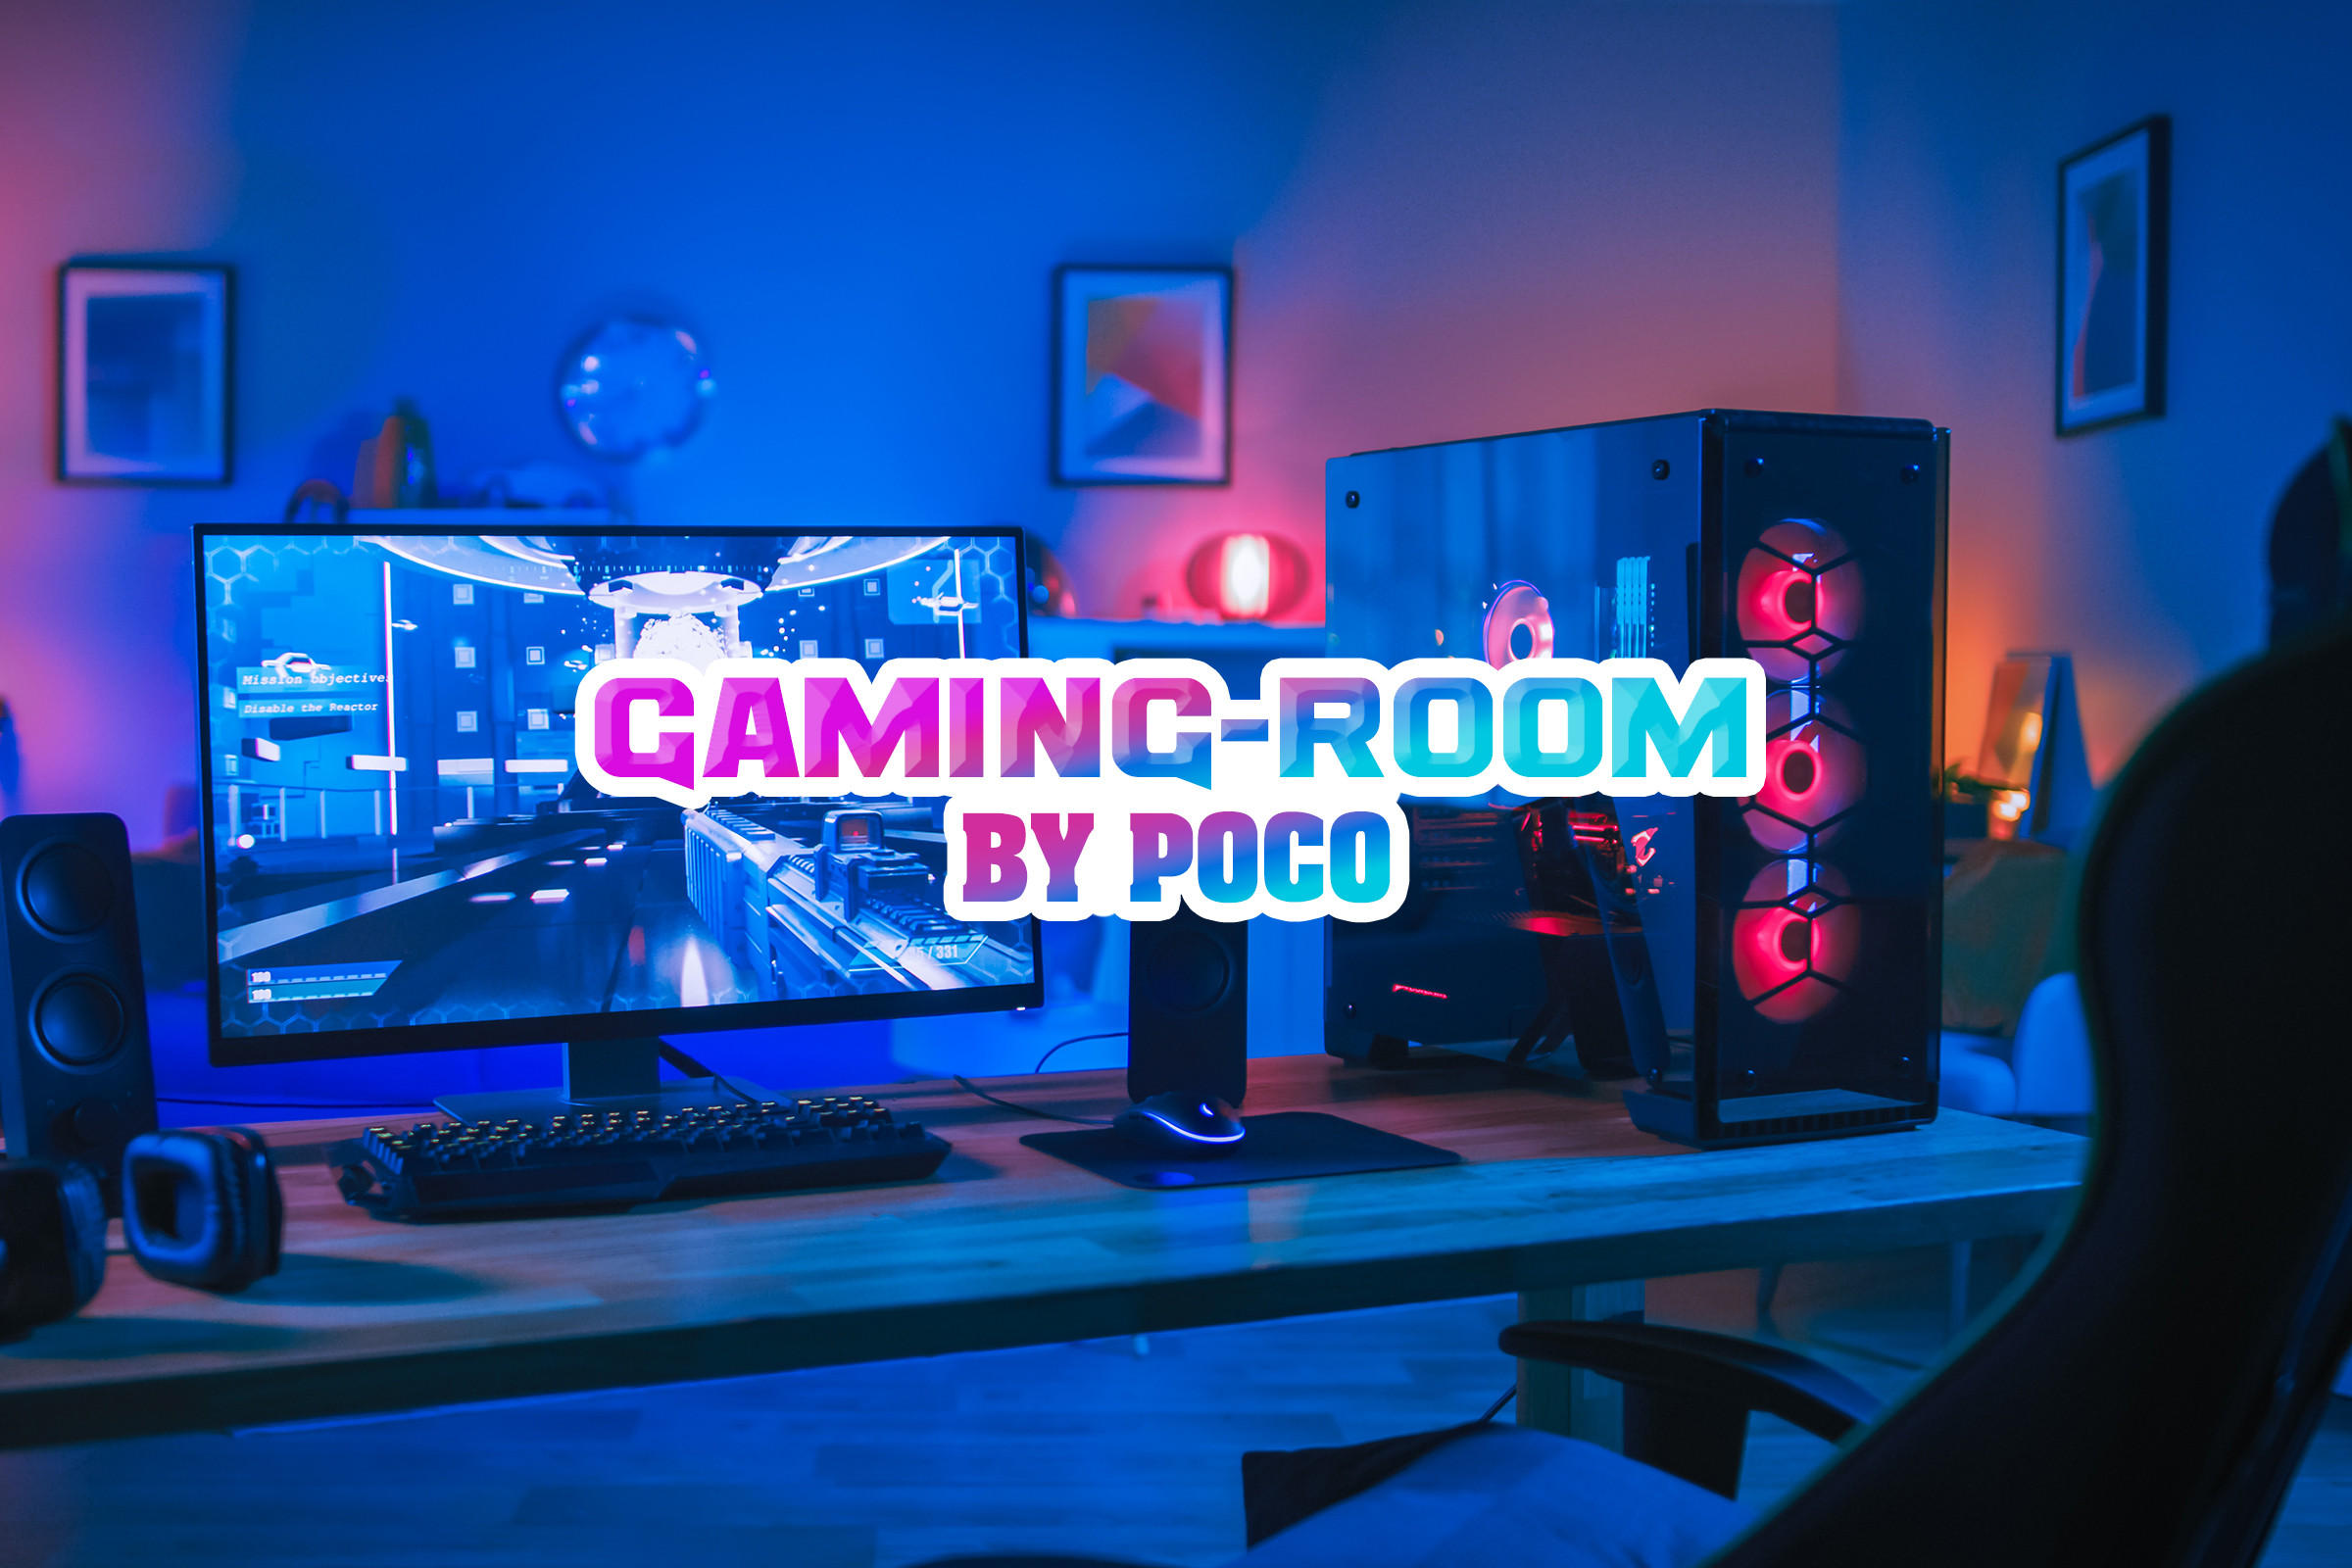 Das eigene Gaming-Zimmer einrichten – so geht's!